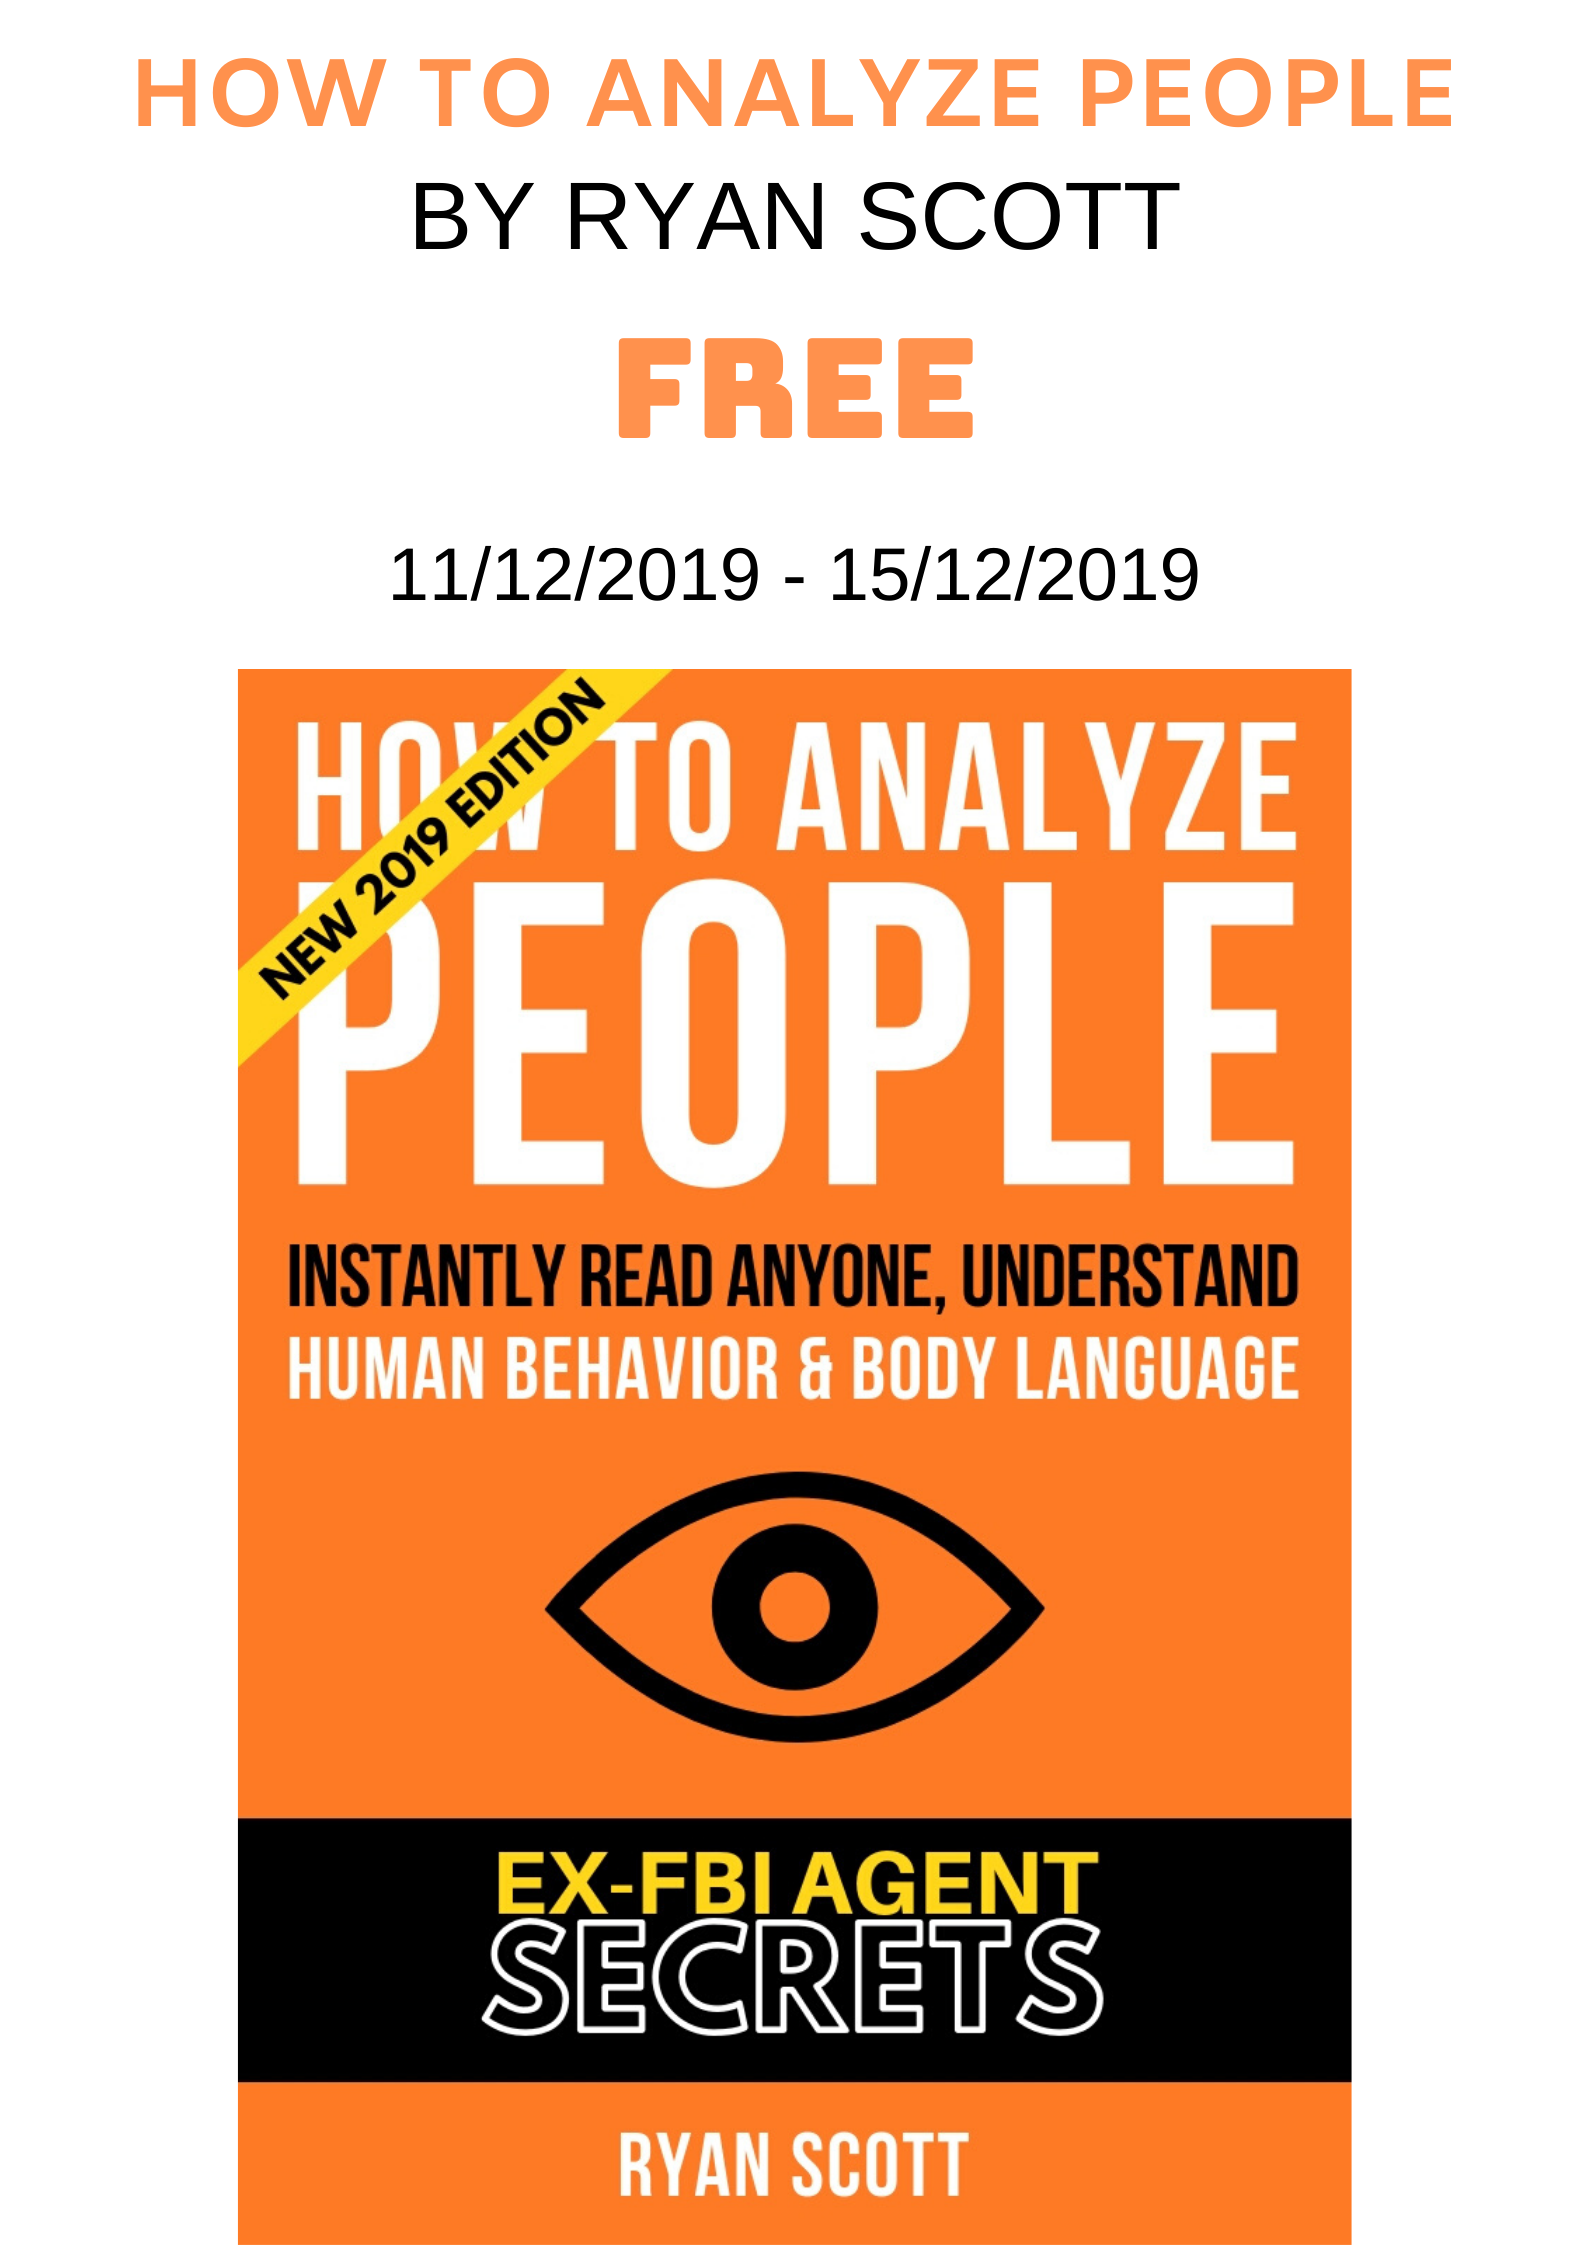 FREE: How To Analyze People by Ryan Scott